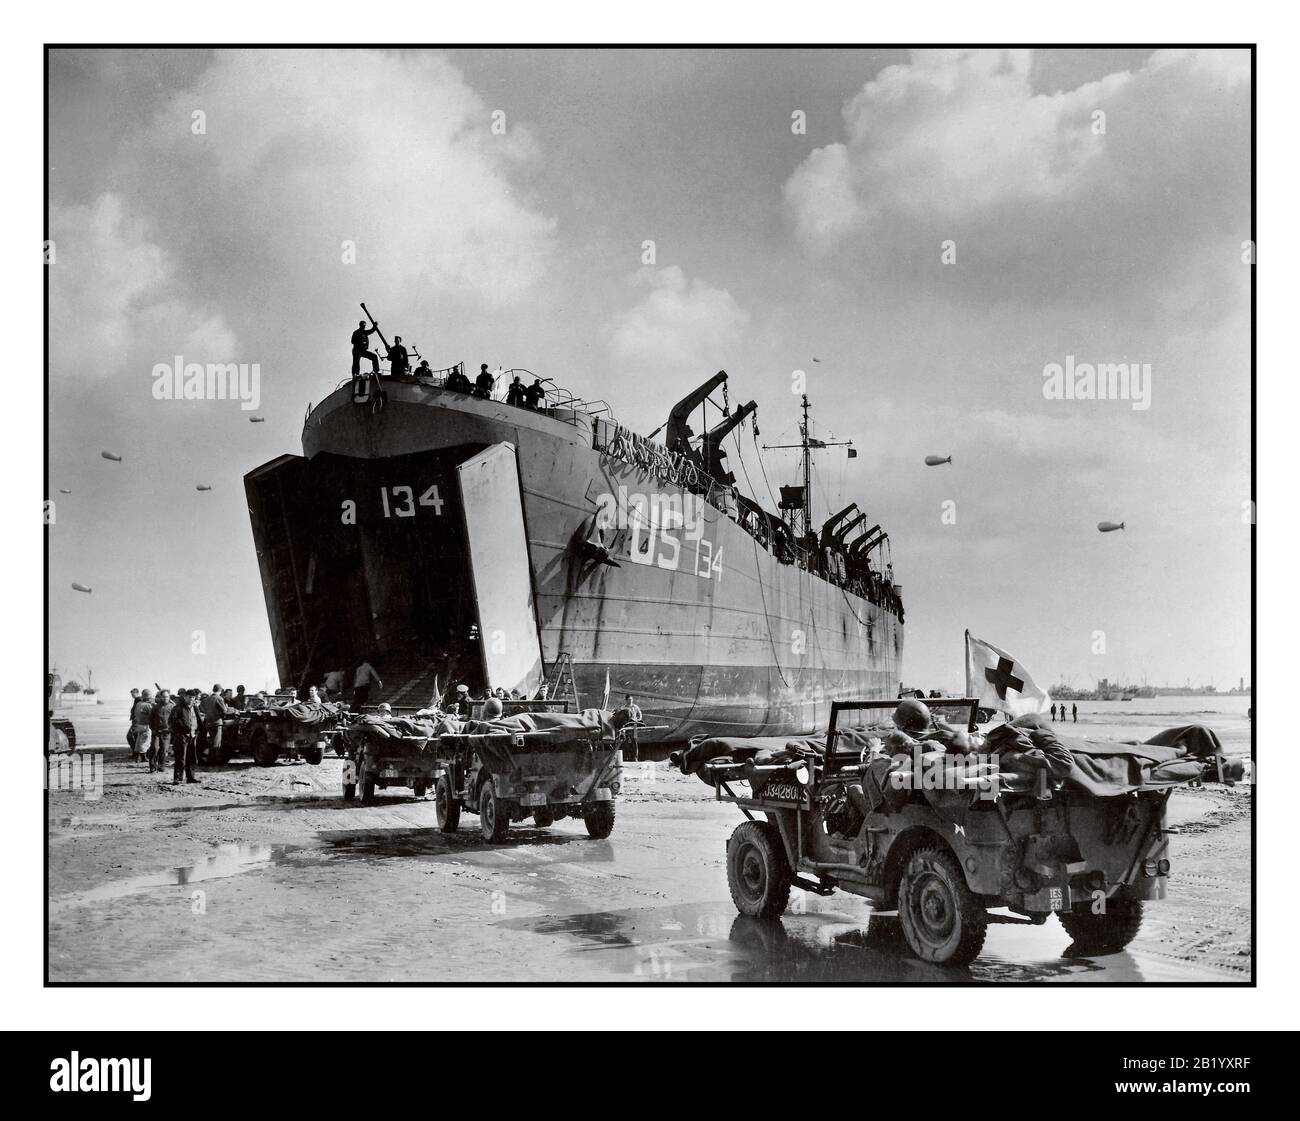 D-Day+6 Operation des zweiten Weltkriegs Overlord amerikanische Opfer US Navy LST-134 und LST-325 in der Normandie gebetet Frankreich, während Jeeps, die entlang des Invasionsstrandes fahren, Opfer auf die Wartschiffe bringen, 12. Juni 1944 WW2 Zweiter Weltkrieg Stockfoto